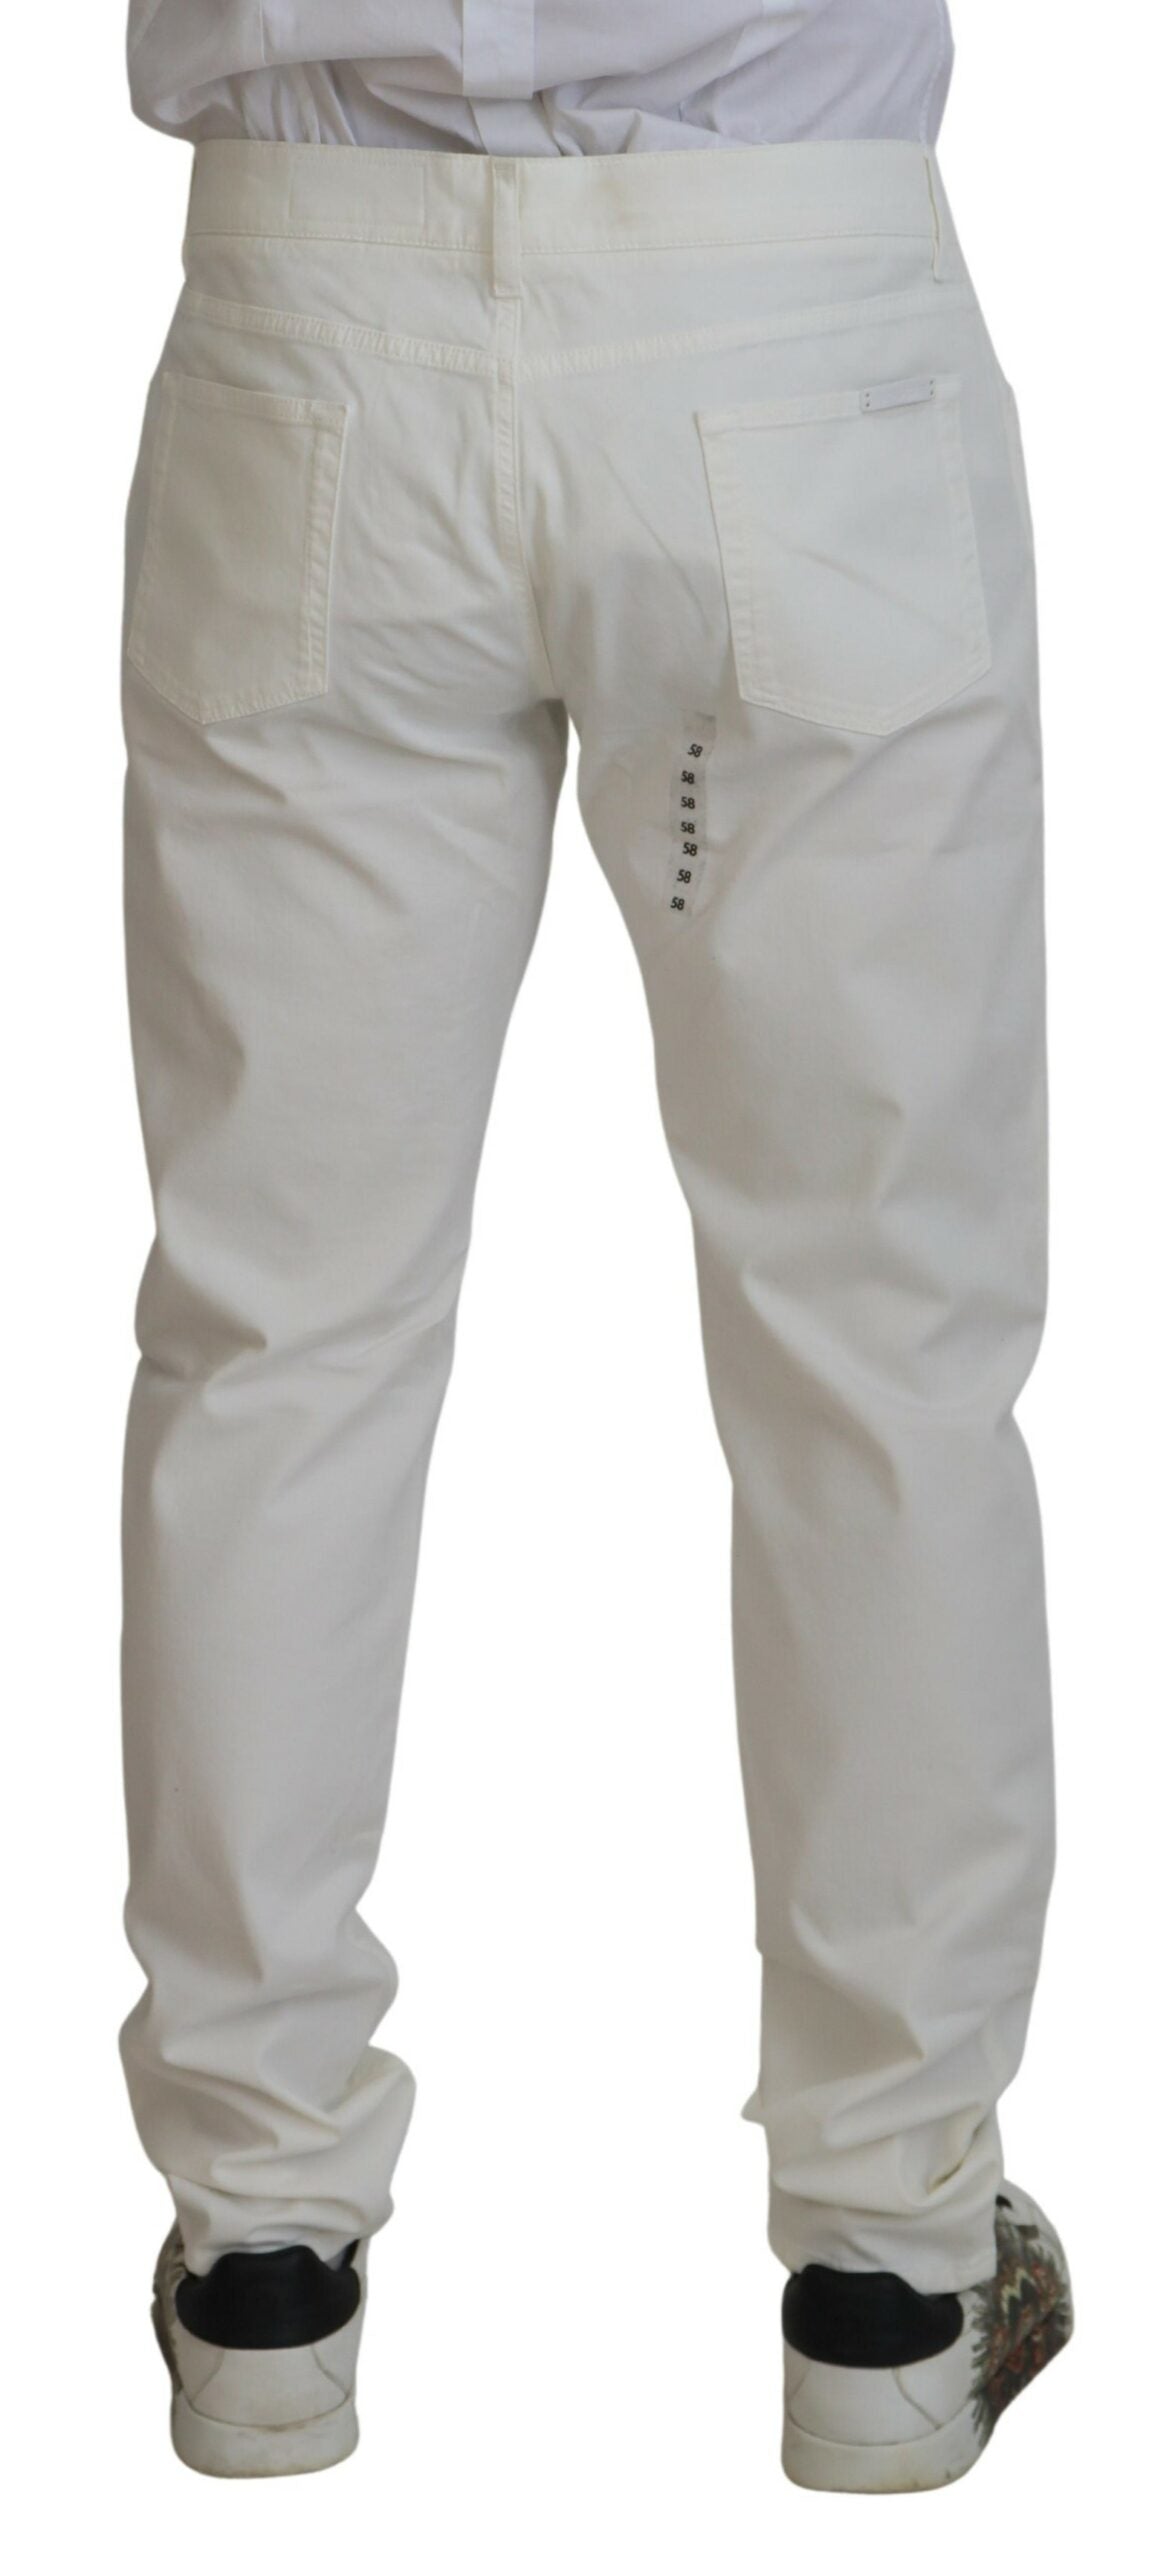 Elegant White Cotton Elastane Jeans